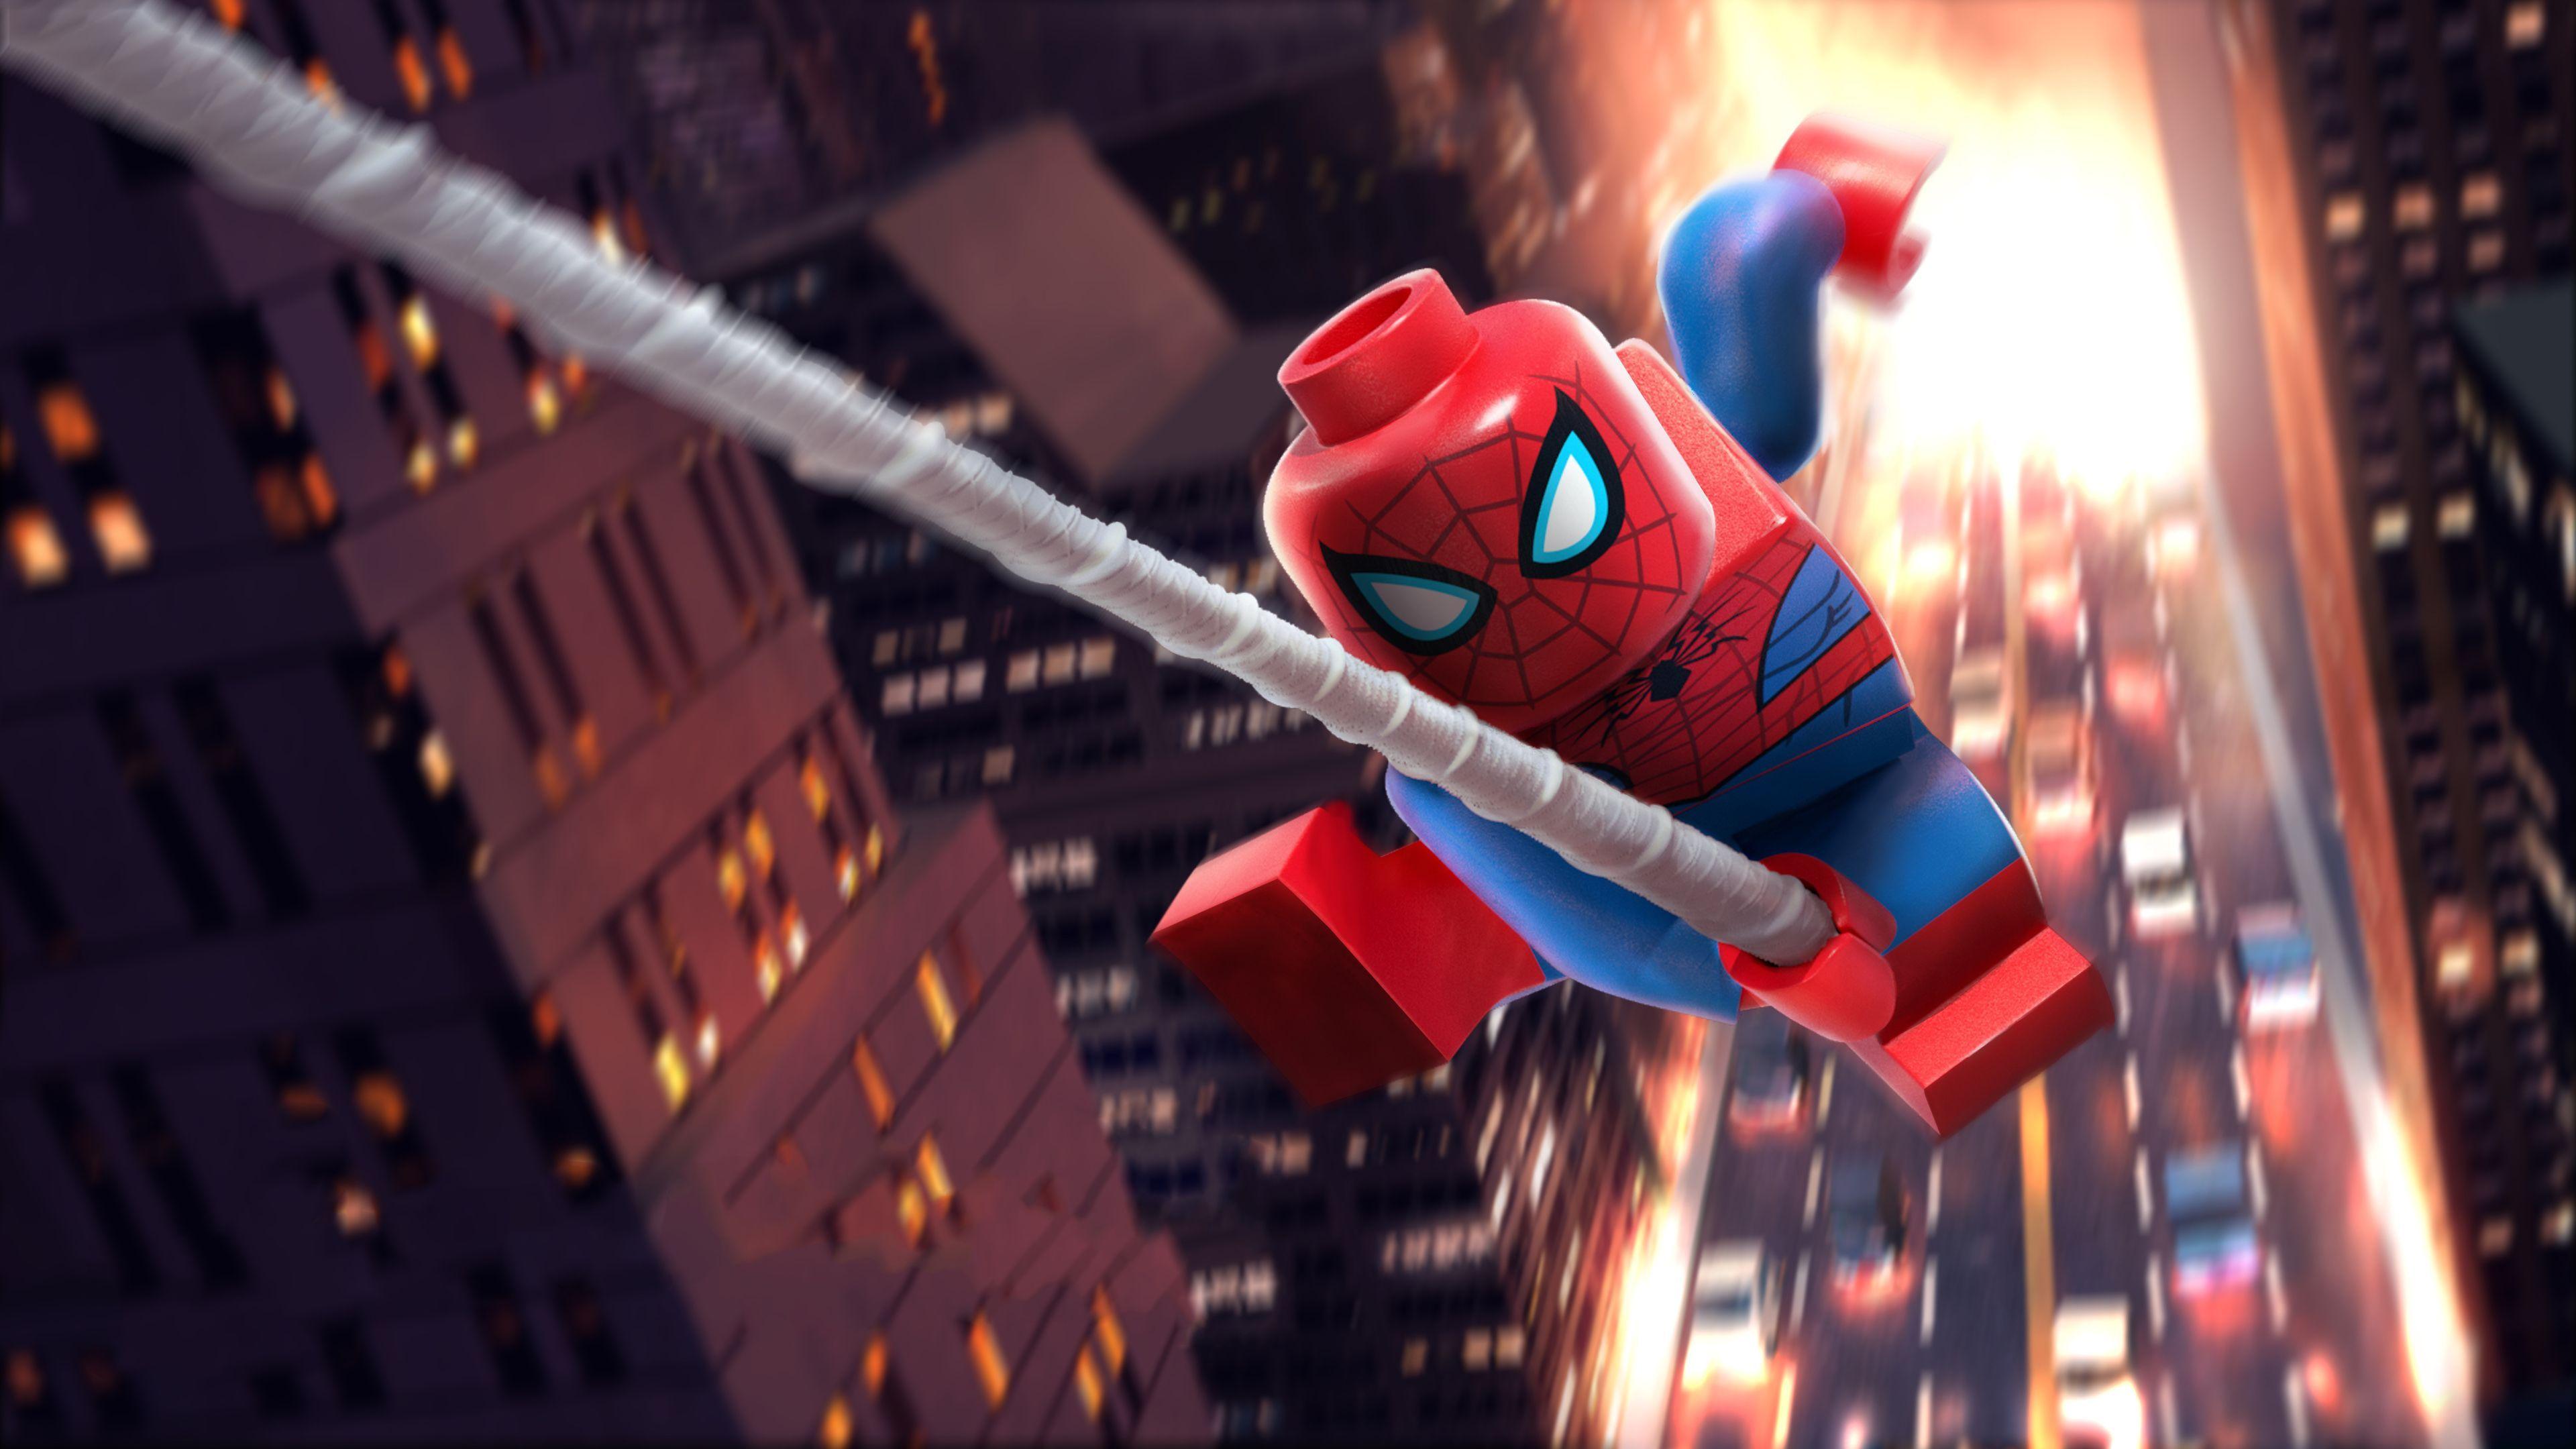 Lego Spiderman Wallpapers là một lựa chọn hoàn hảo cho các fan của siêu anh hùng Lego Spiderman. Với thiết kế độc đáo, sắc nét và ngộ nghĩnh, đây sẽ là một bổ sung cuối cùng cho bộ sưu tập điện thoại của bạn. Hãy khám phá ngay thế giới siêu anh hùng Lego Spiderman với ảnh nền chất lượng cao này.